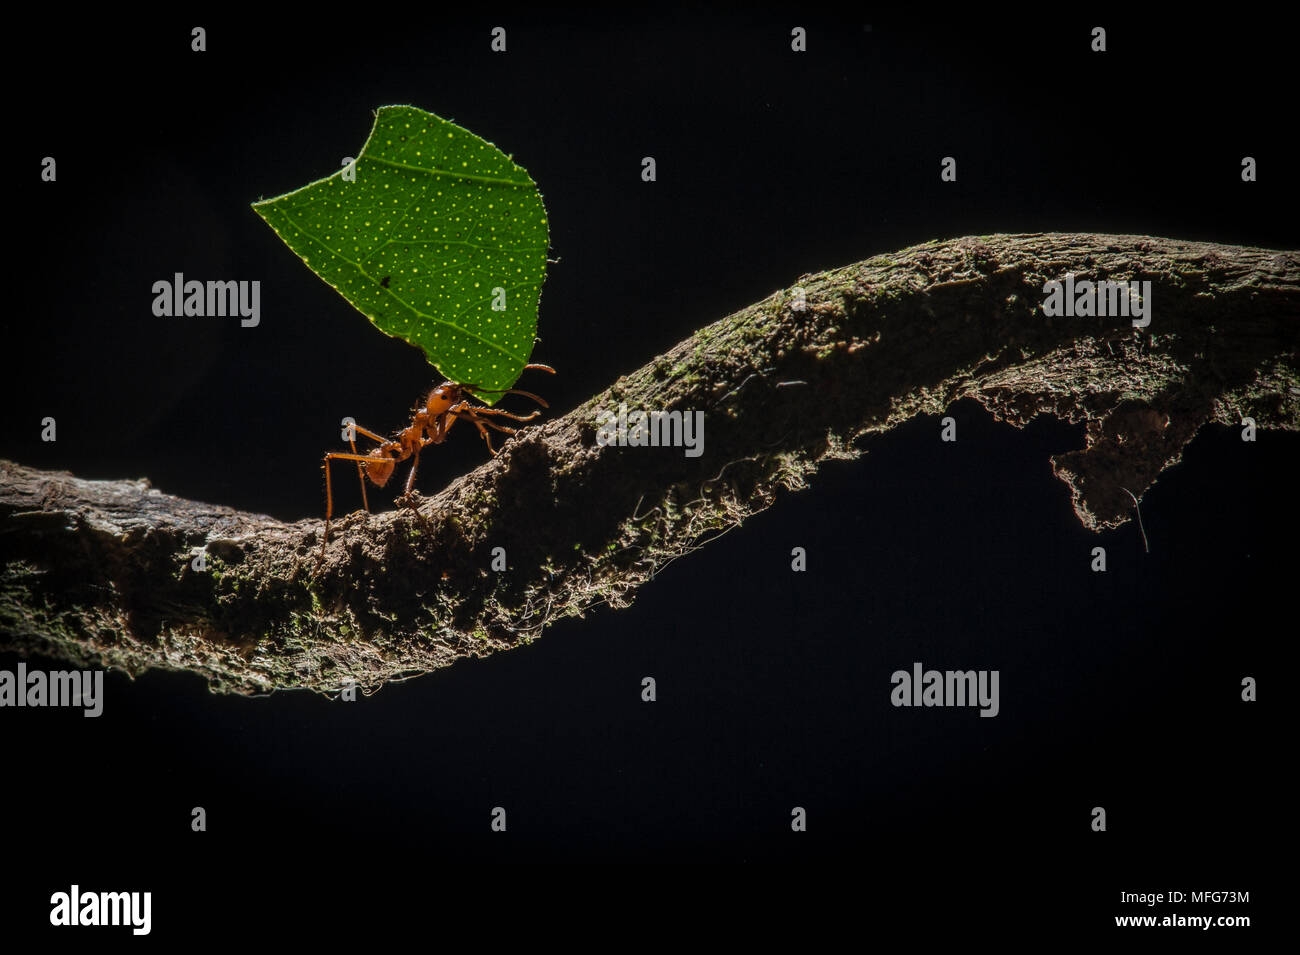 Leaf-cutter ants, Atta sp. in Costa Rica Stock Photo